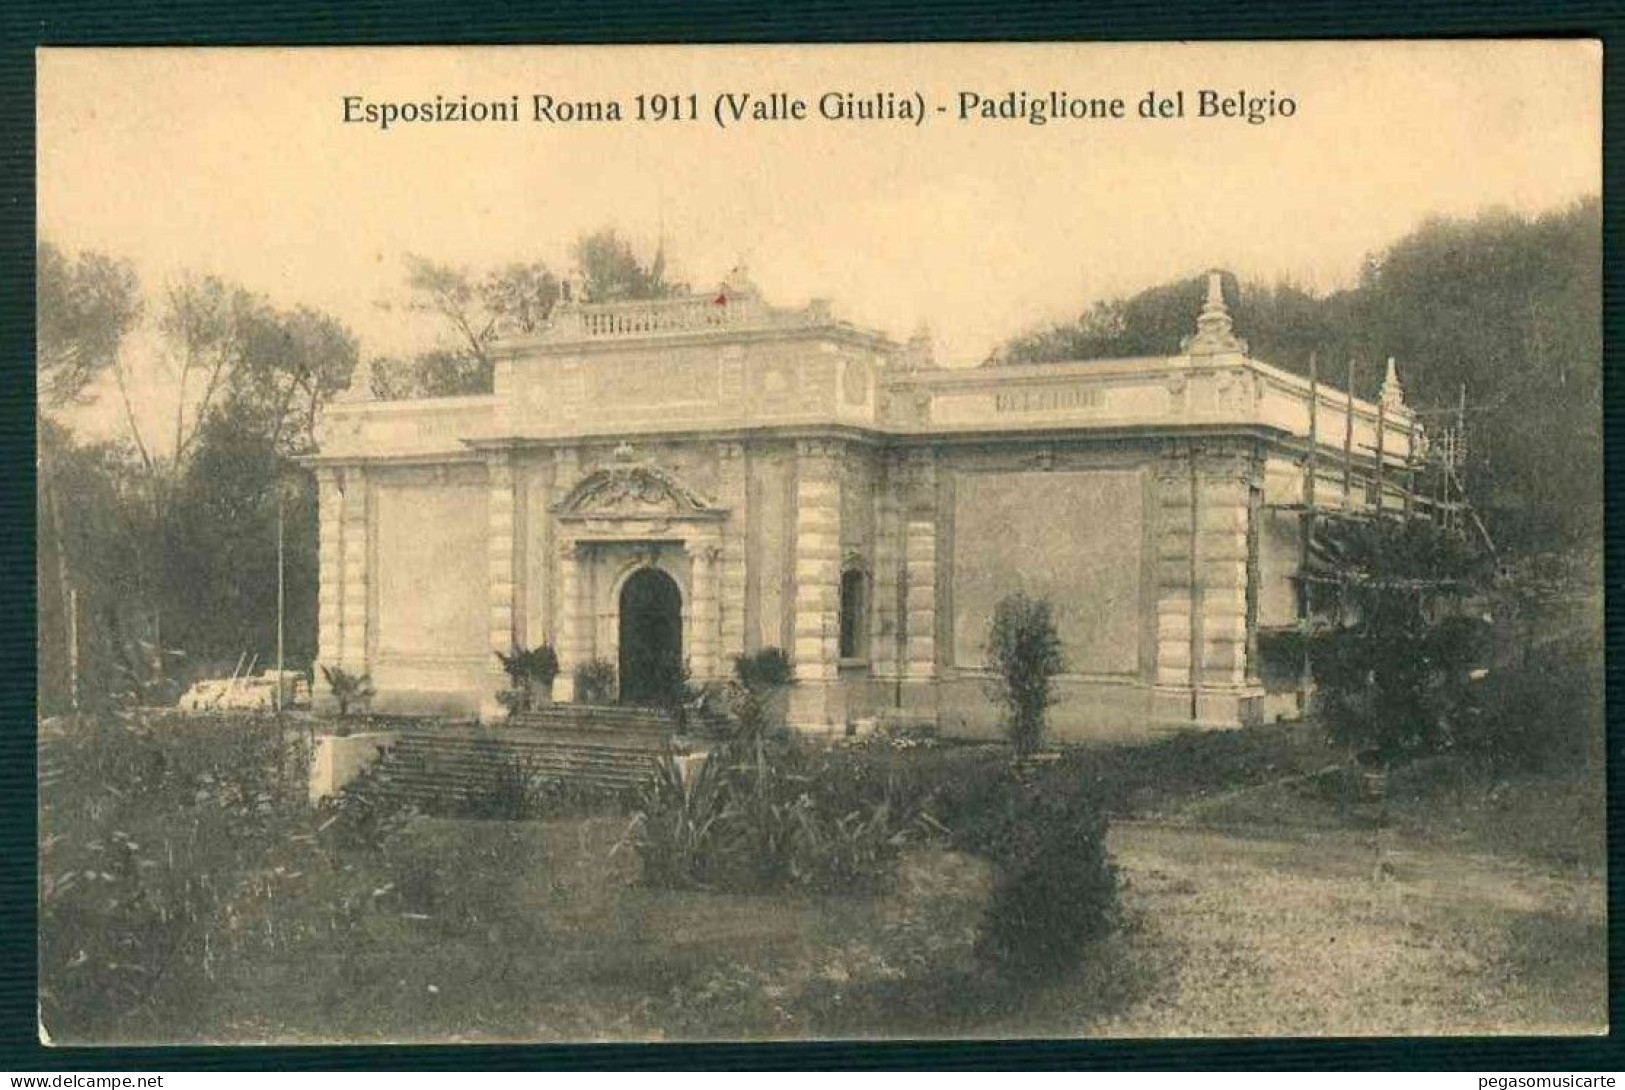 VX233 - ESPOSIZIONI ROMA 1911 (VALLE GIULIA) - PADIGLIONE DEL BELGIO - Mostre, Esposizioni